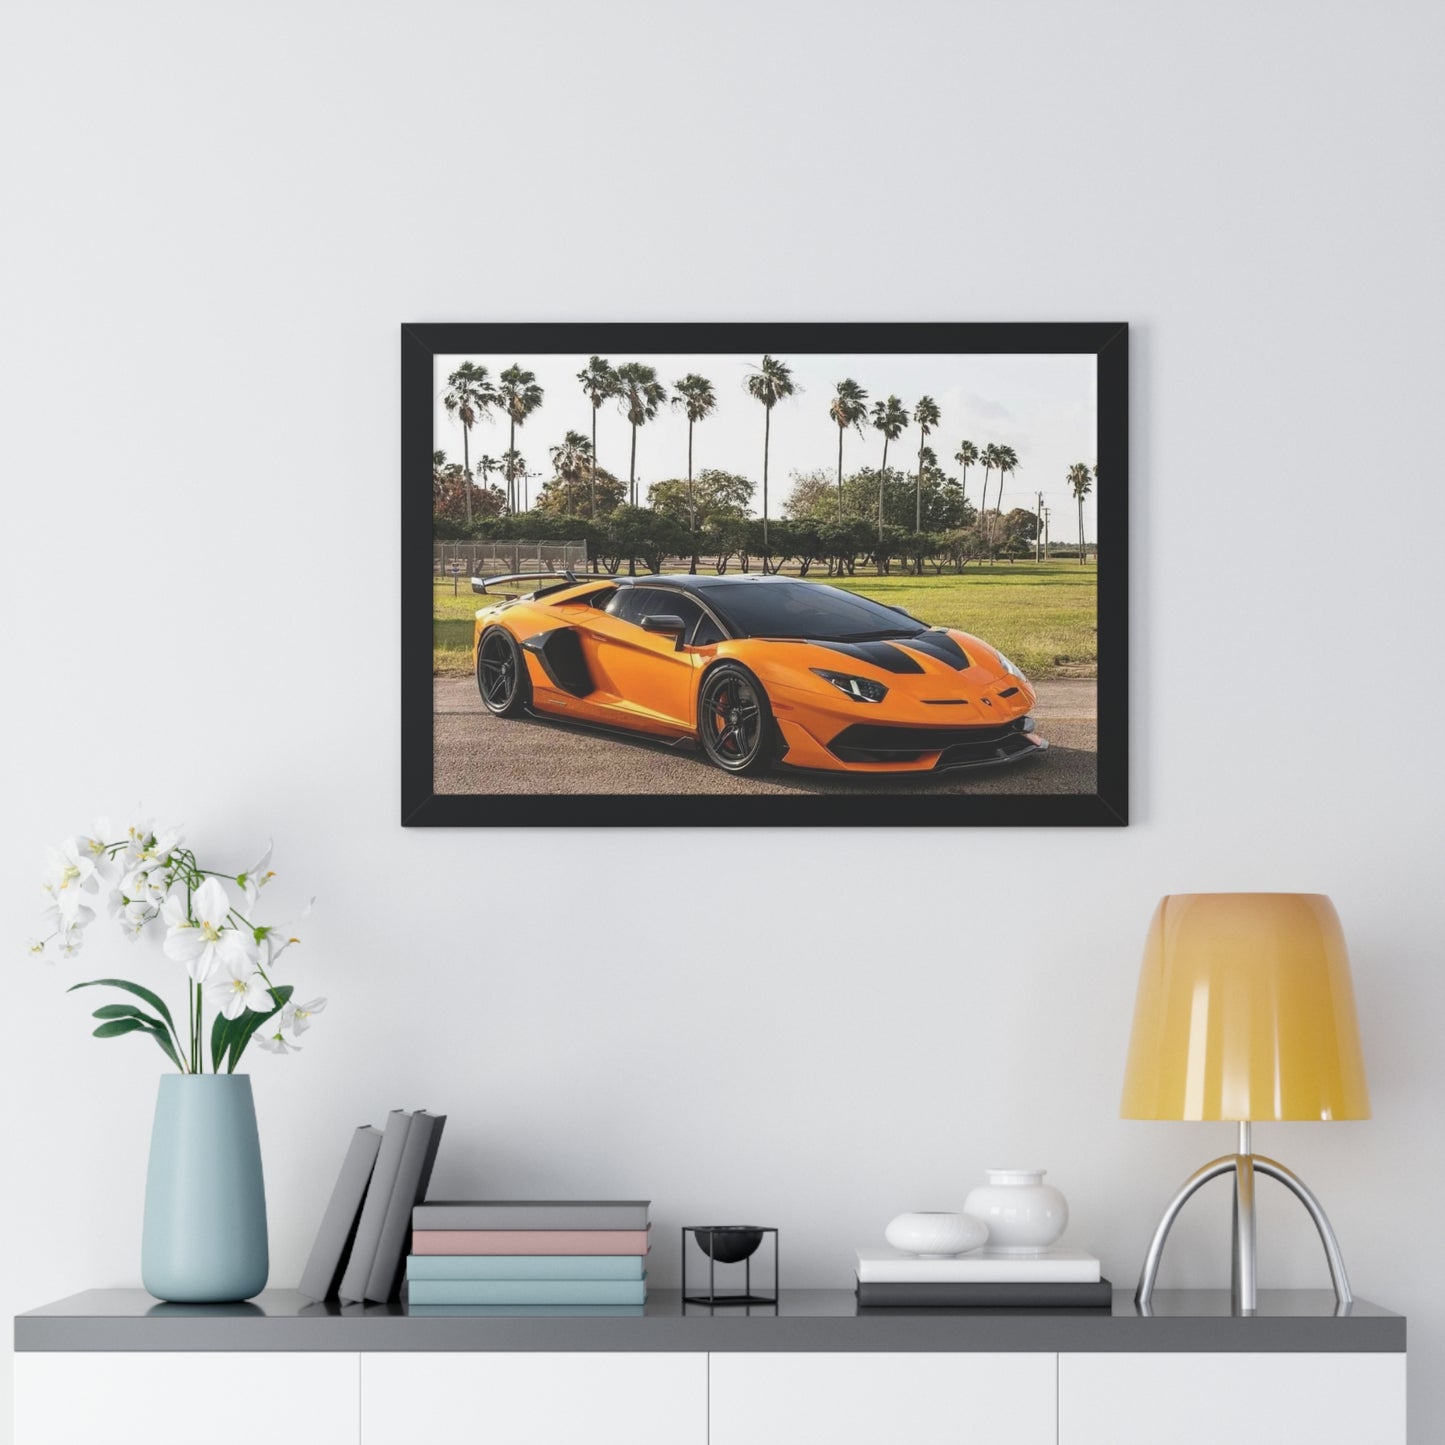 "Palm Trees" 30" x 20" Framed Lamborghini Poster